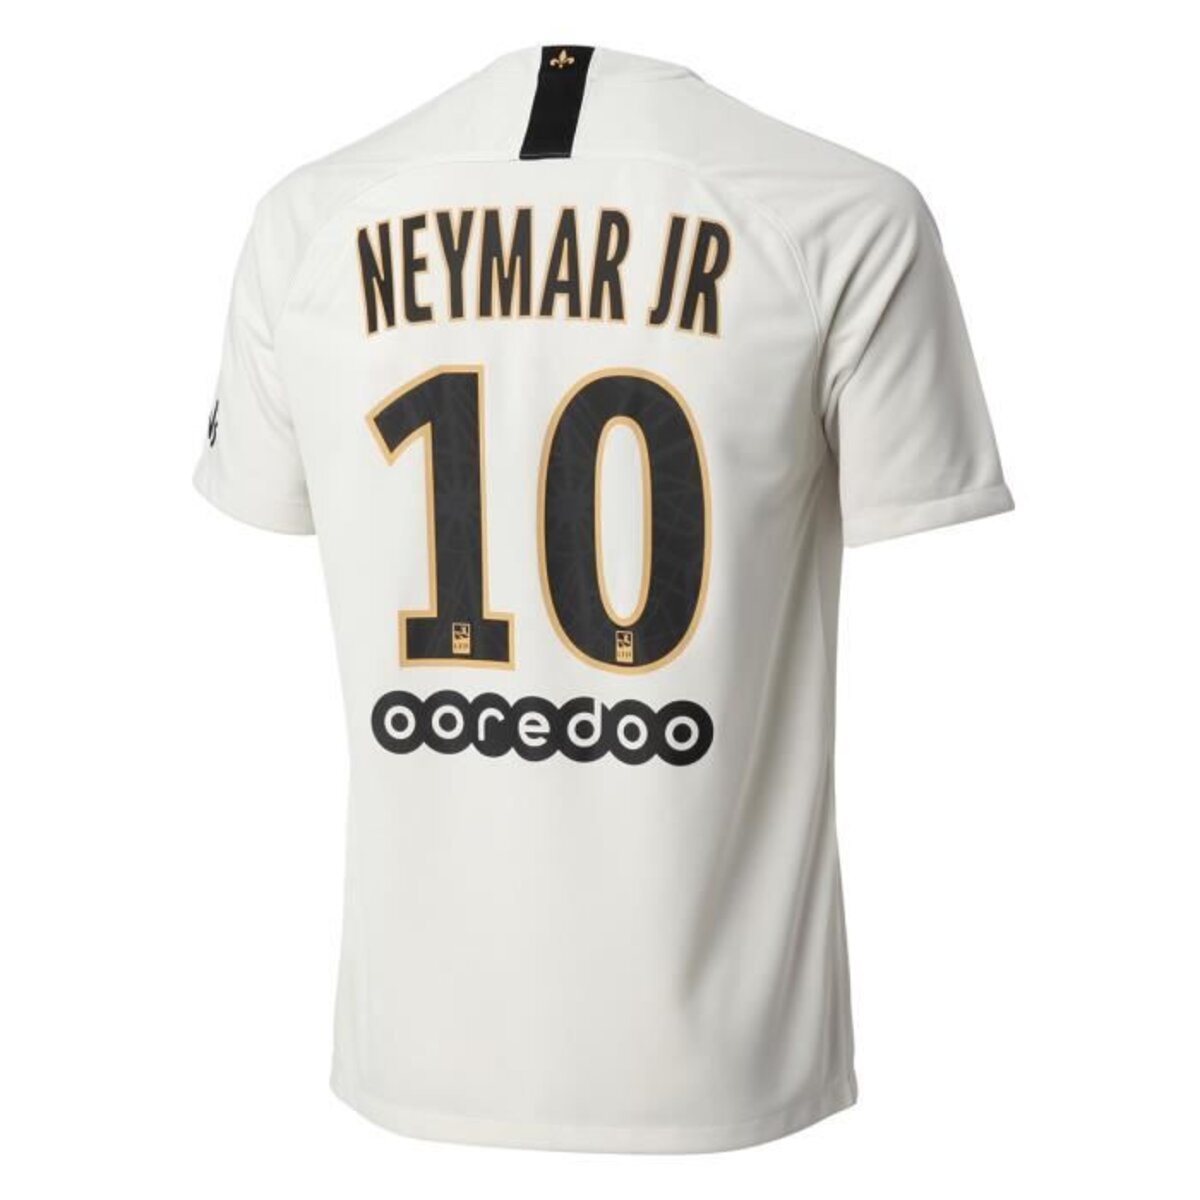 Maillot domicile Neymar Jr. PSG 20/21 par Nike RV7011081 – pas cher maillots  de foot promo